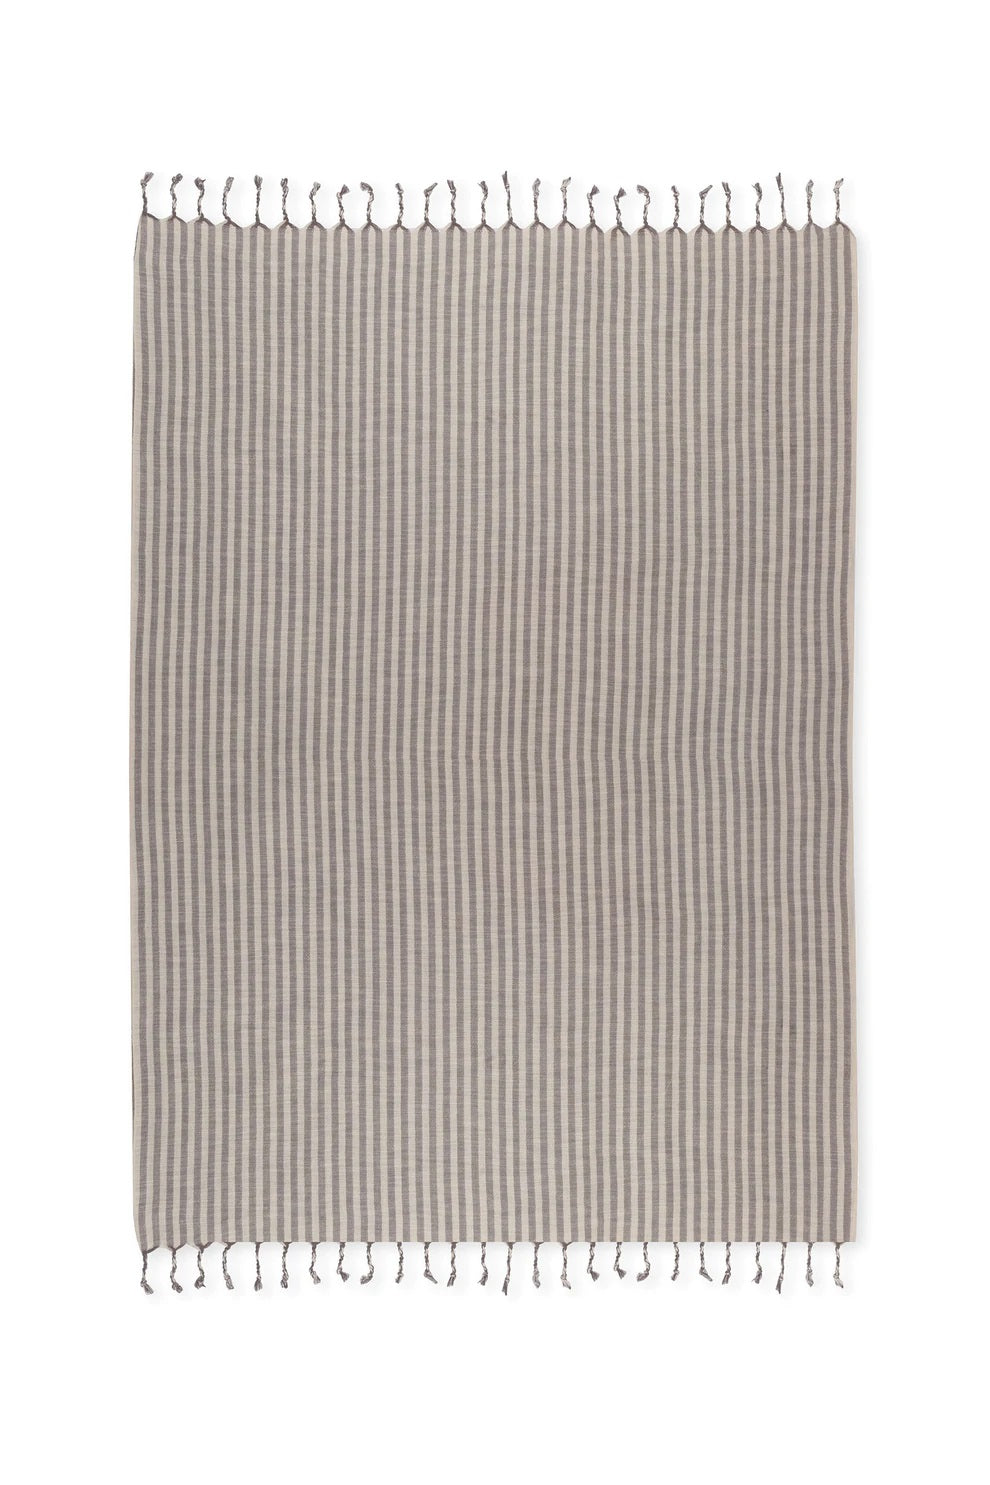 Stripes Cotton Linen Towel